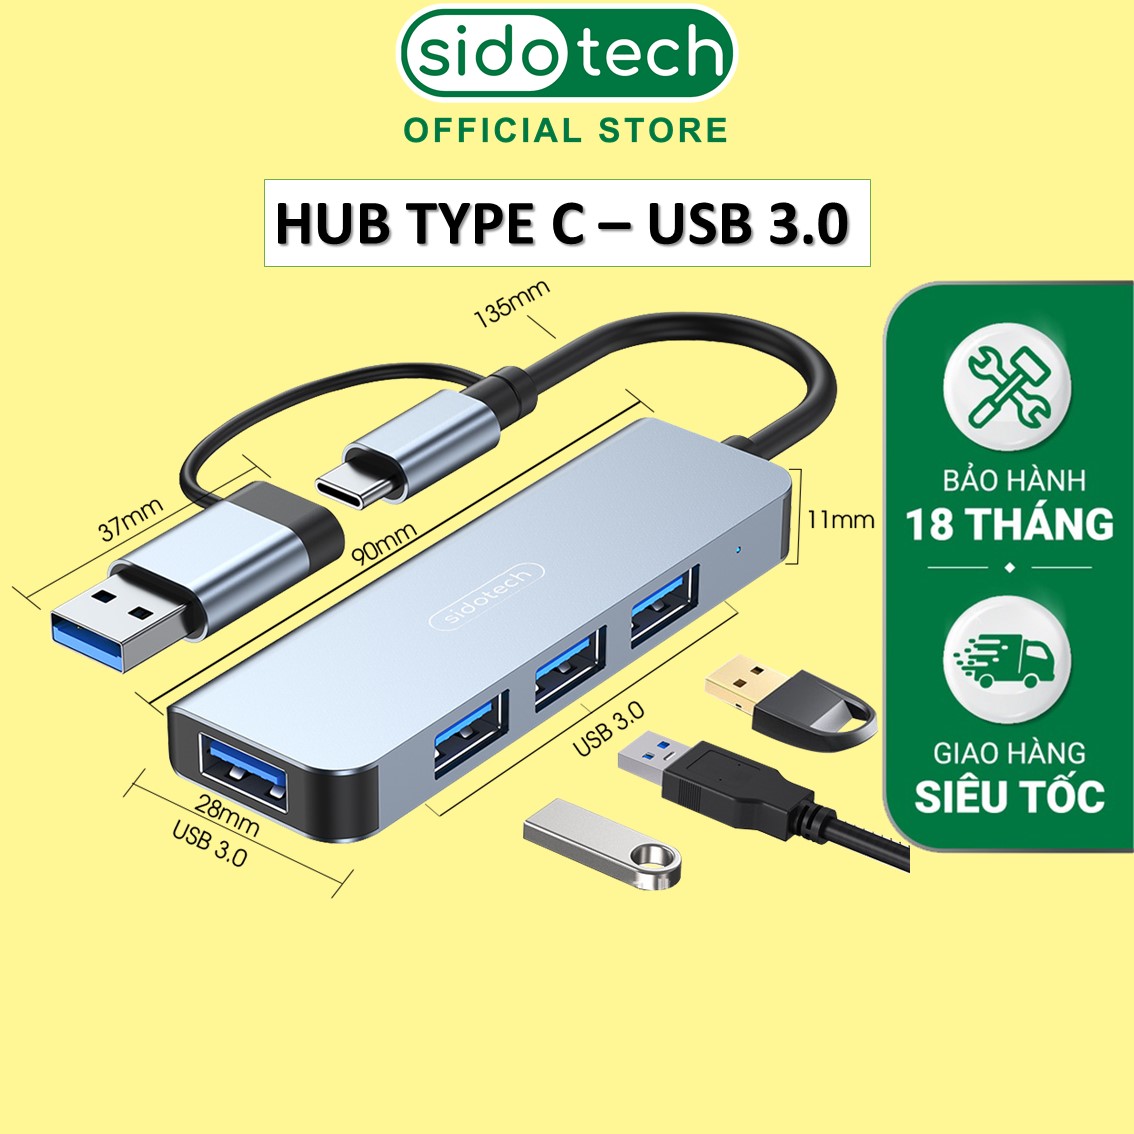 HUB USB Type C 3.0 bộ chia cổng 4 in 1 SIDOTECH tốc độ cao tích hợp cả cổng USB và TYPE C bộ mở rộng chia ra 4 port tương thích cho máy in bàn phím chuột macbook pro máy tính để bàn laptop PC - Hàng chính hãng